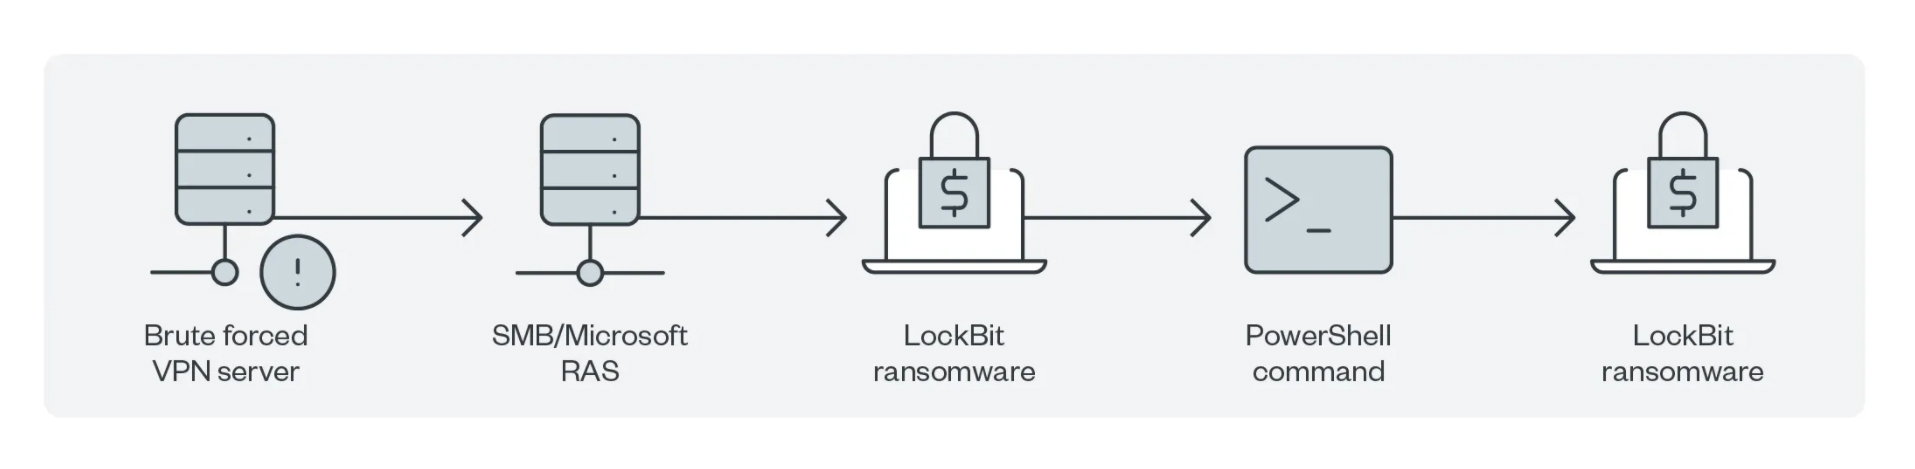 Bild 3. Beispiel einer LockBit 1.0-Kampagne, die Microsoft RAS für den Zugriff auf andere Systeme einsetzt